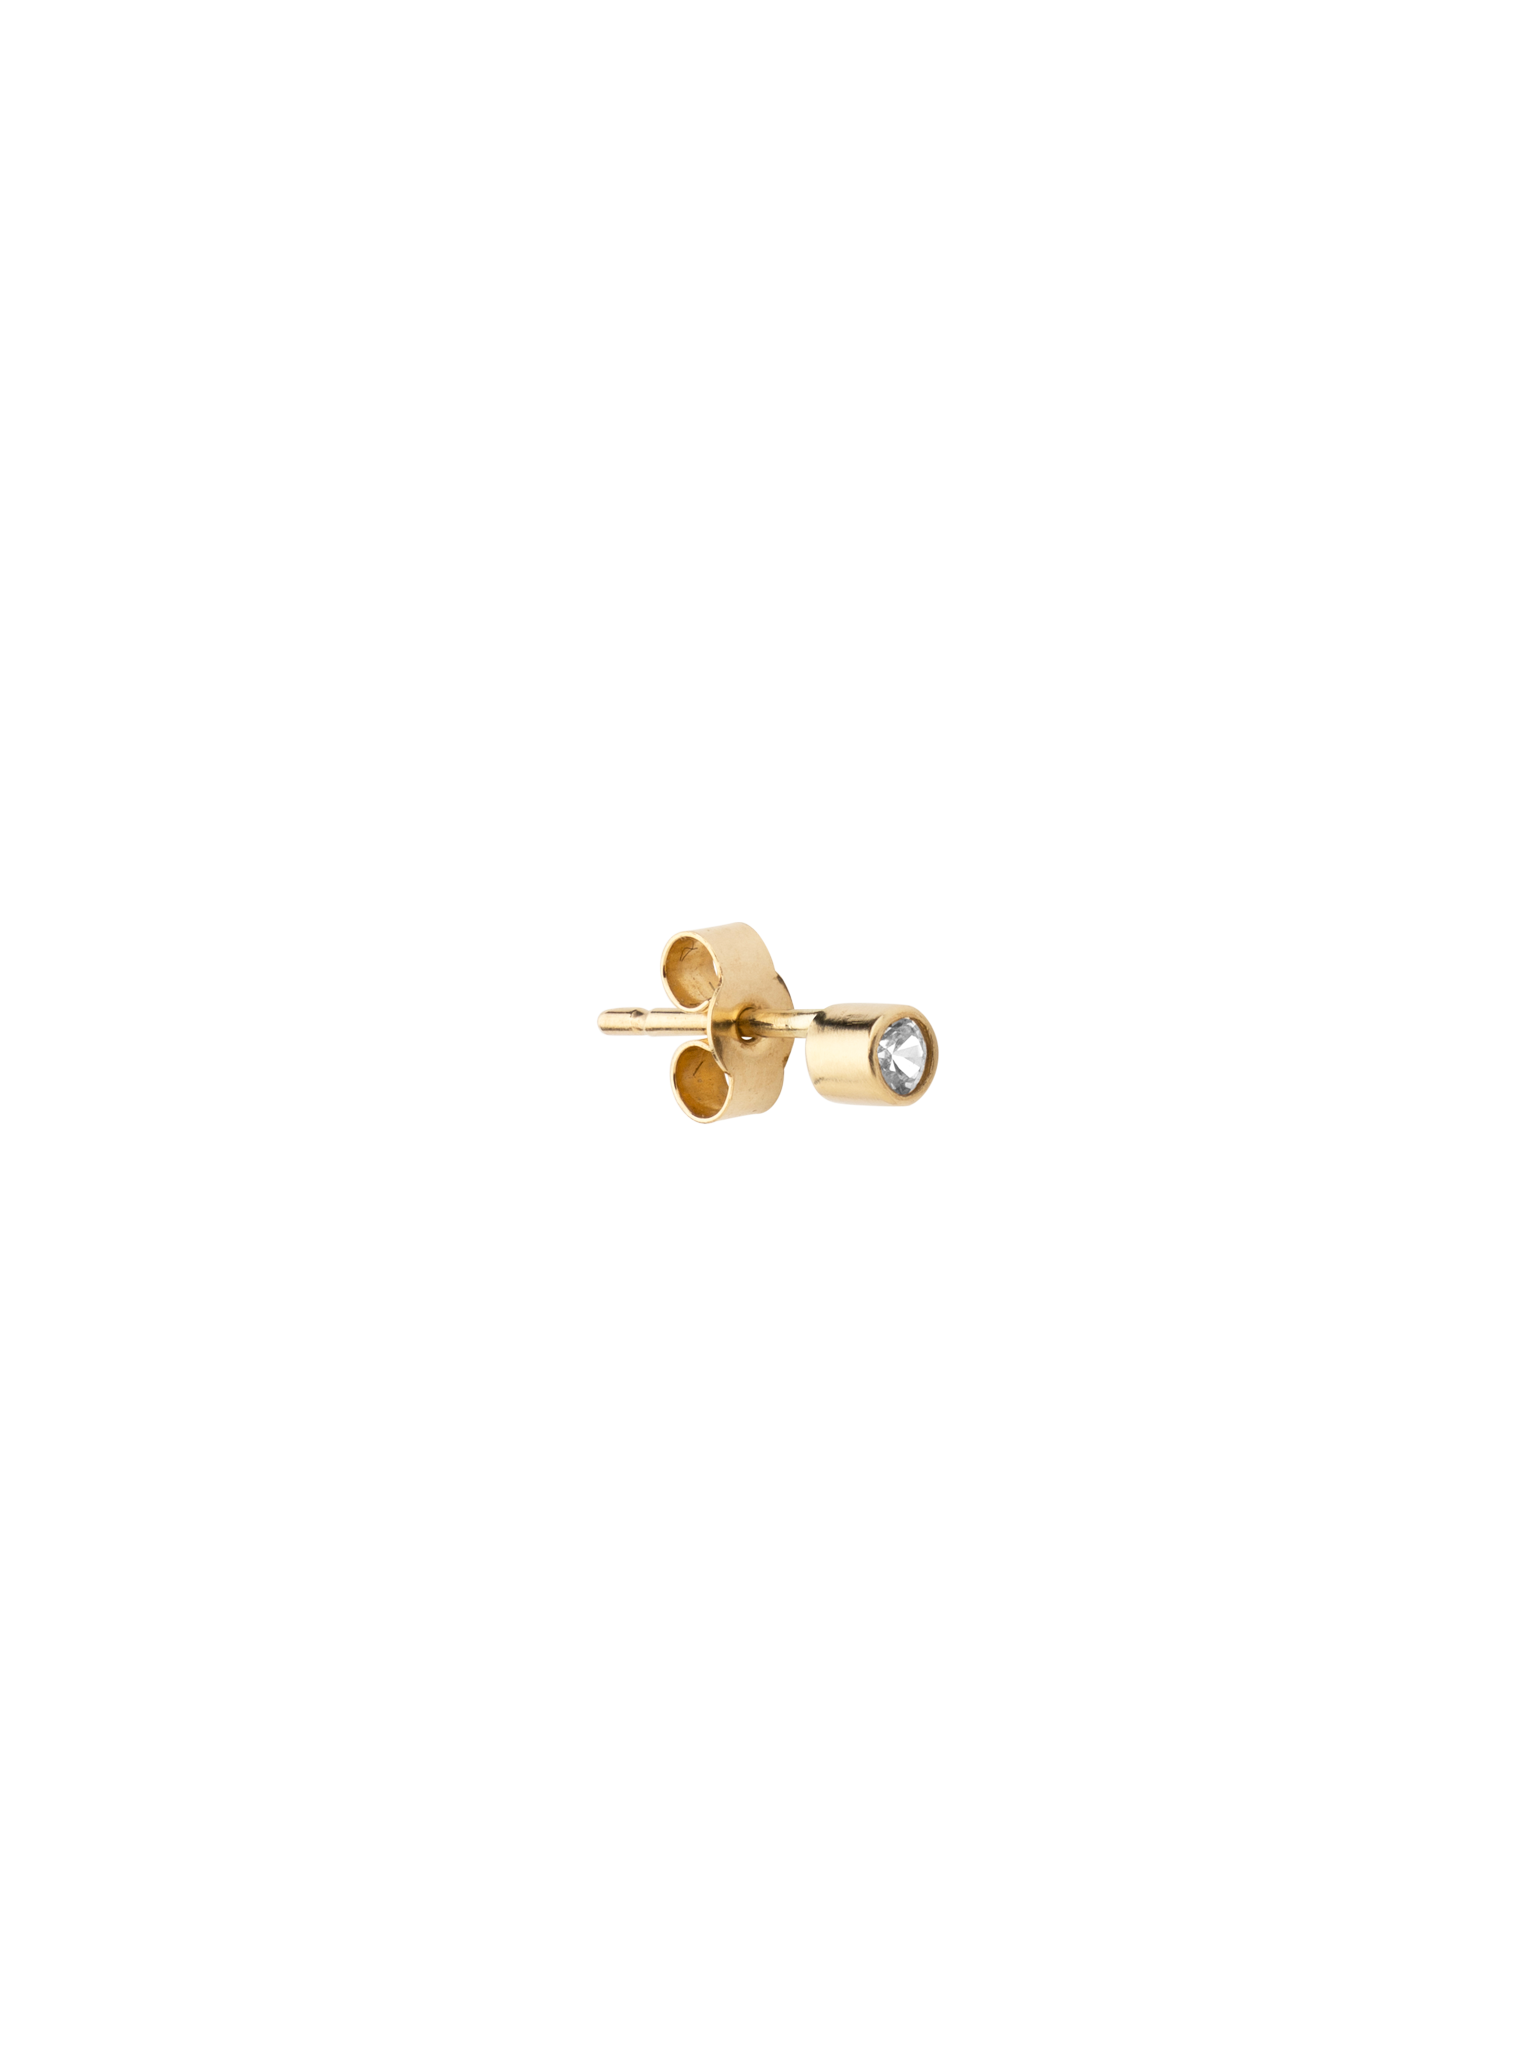 Gold dot earring